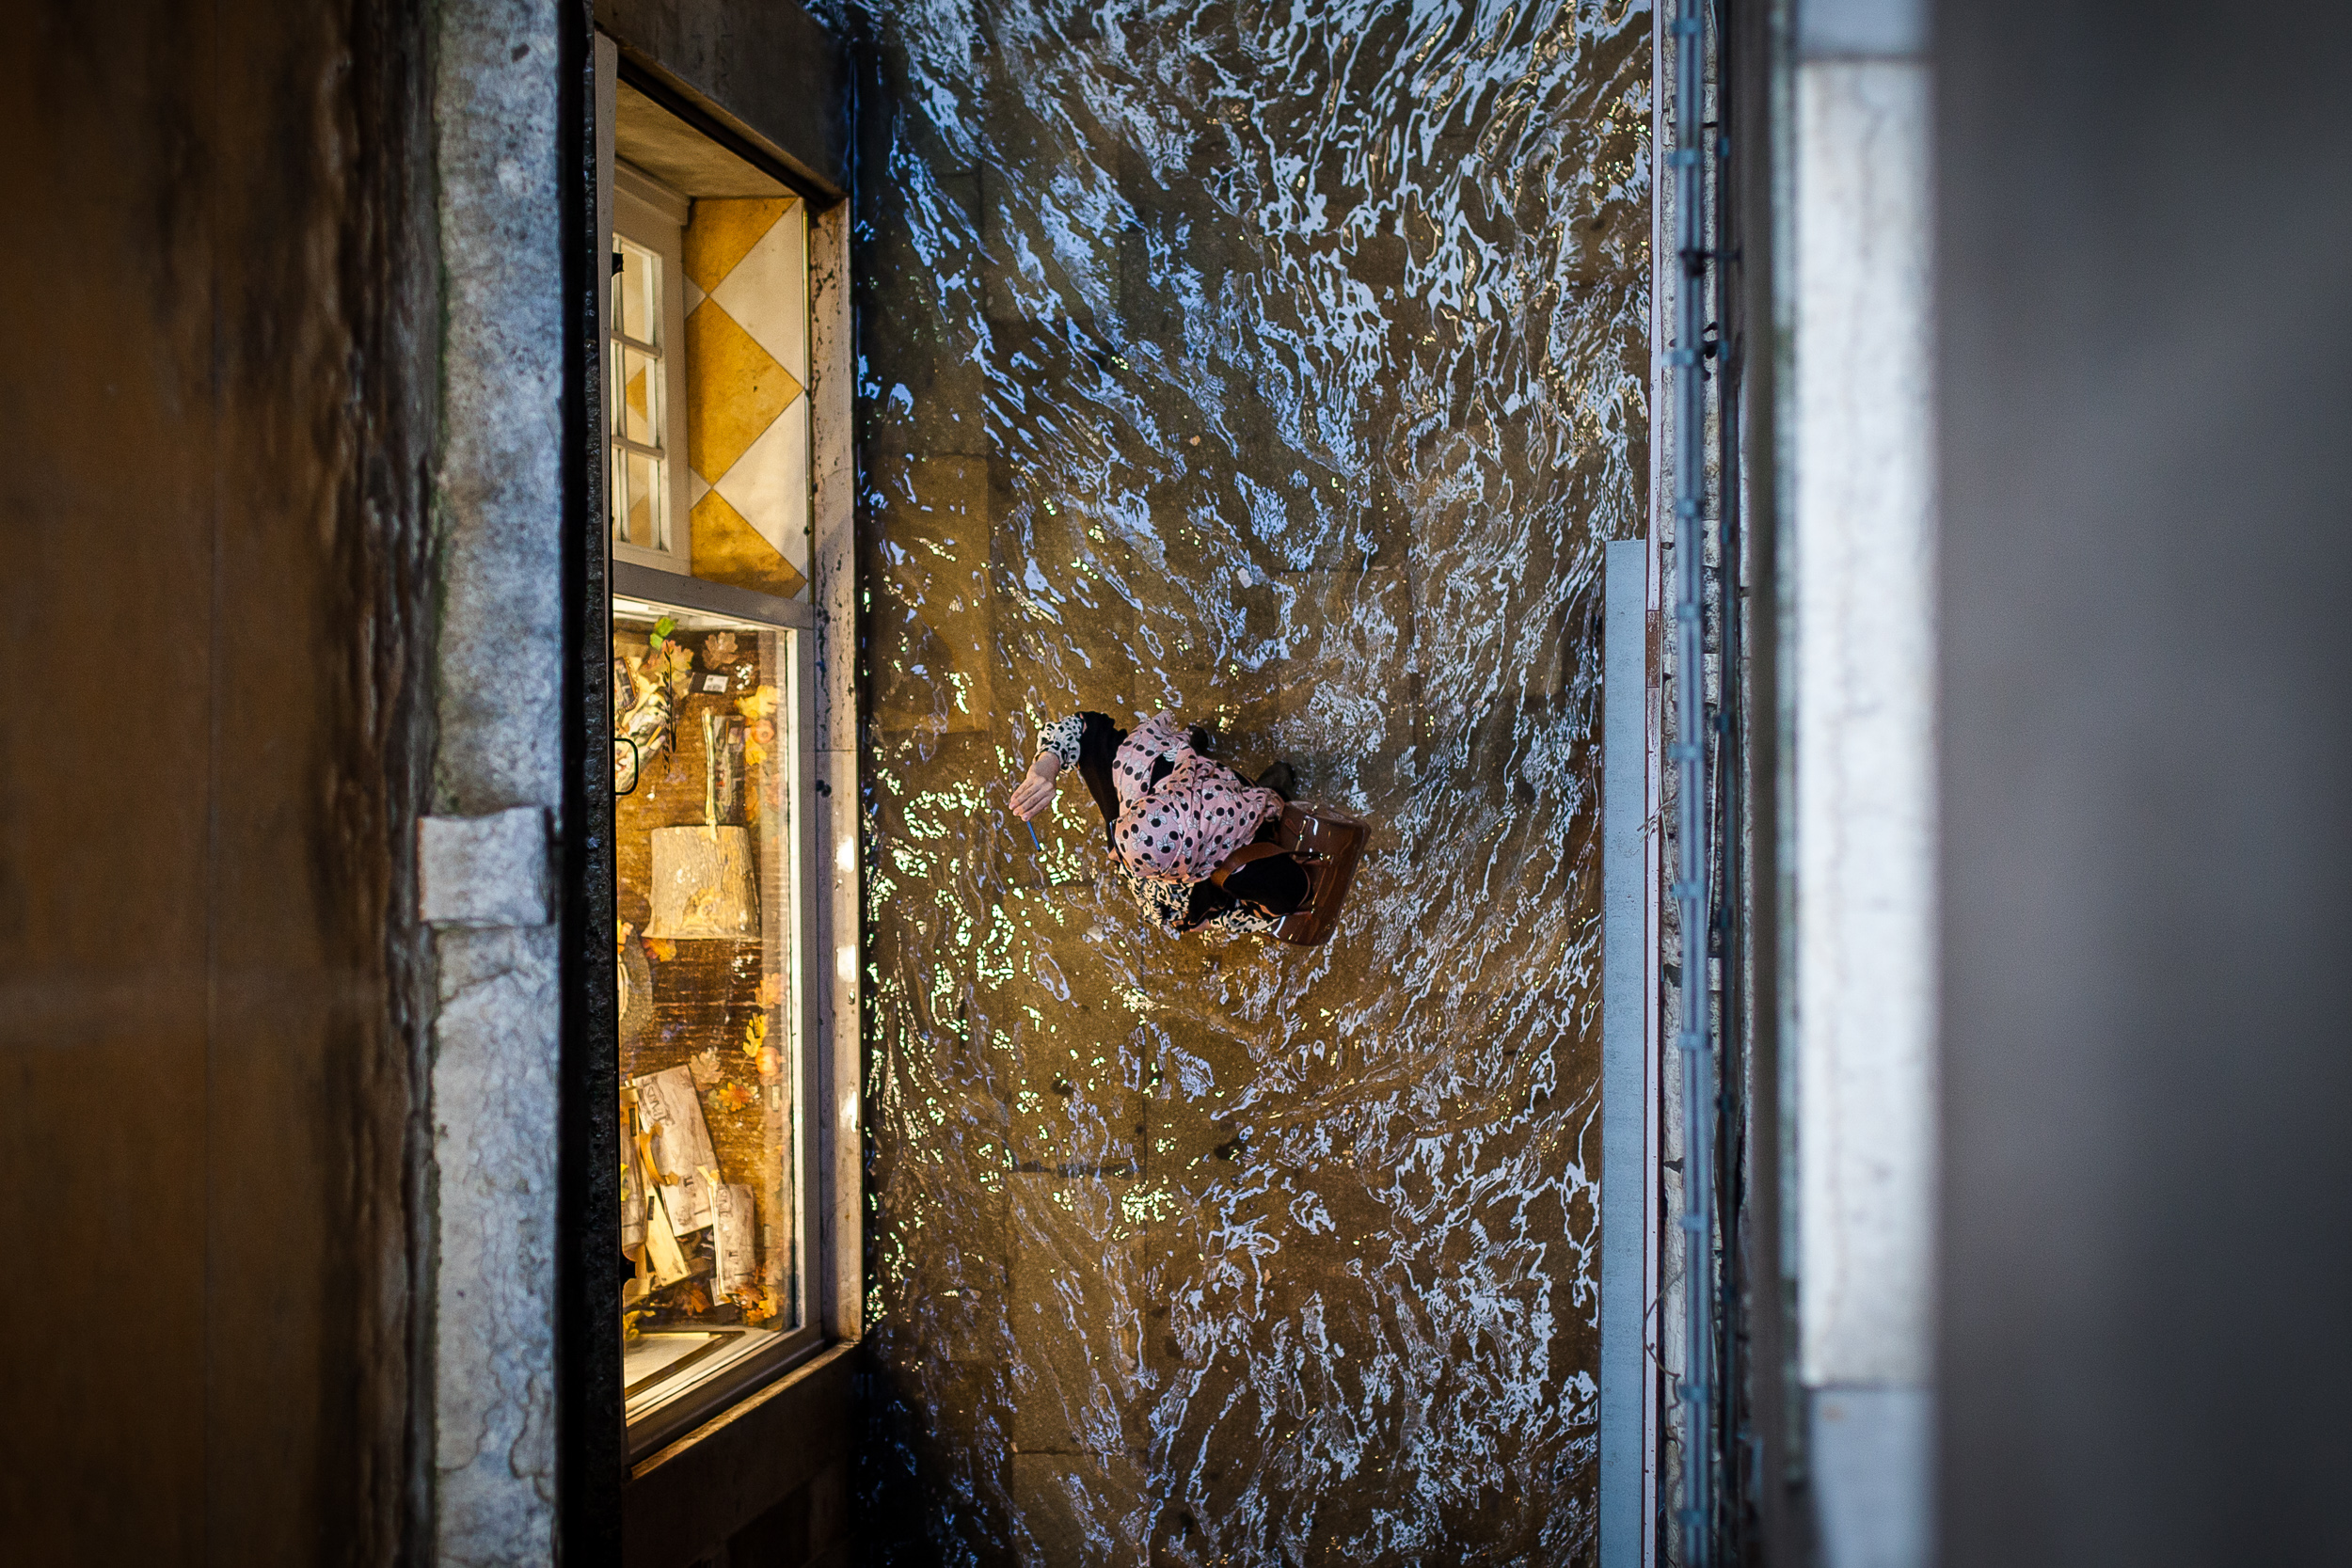 09_Venice_High_Tide_Acqua_Alta_by_Davide_Camesasca